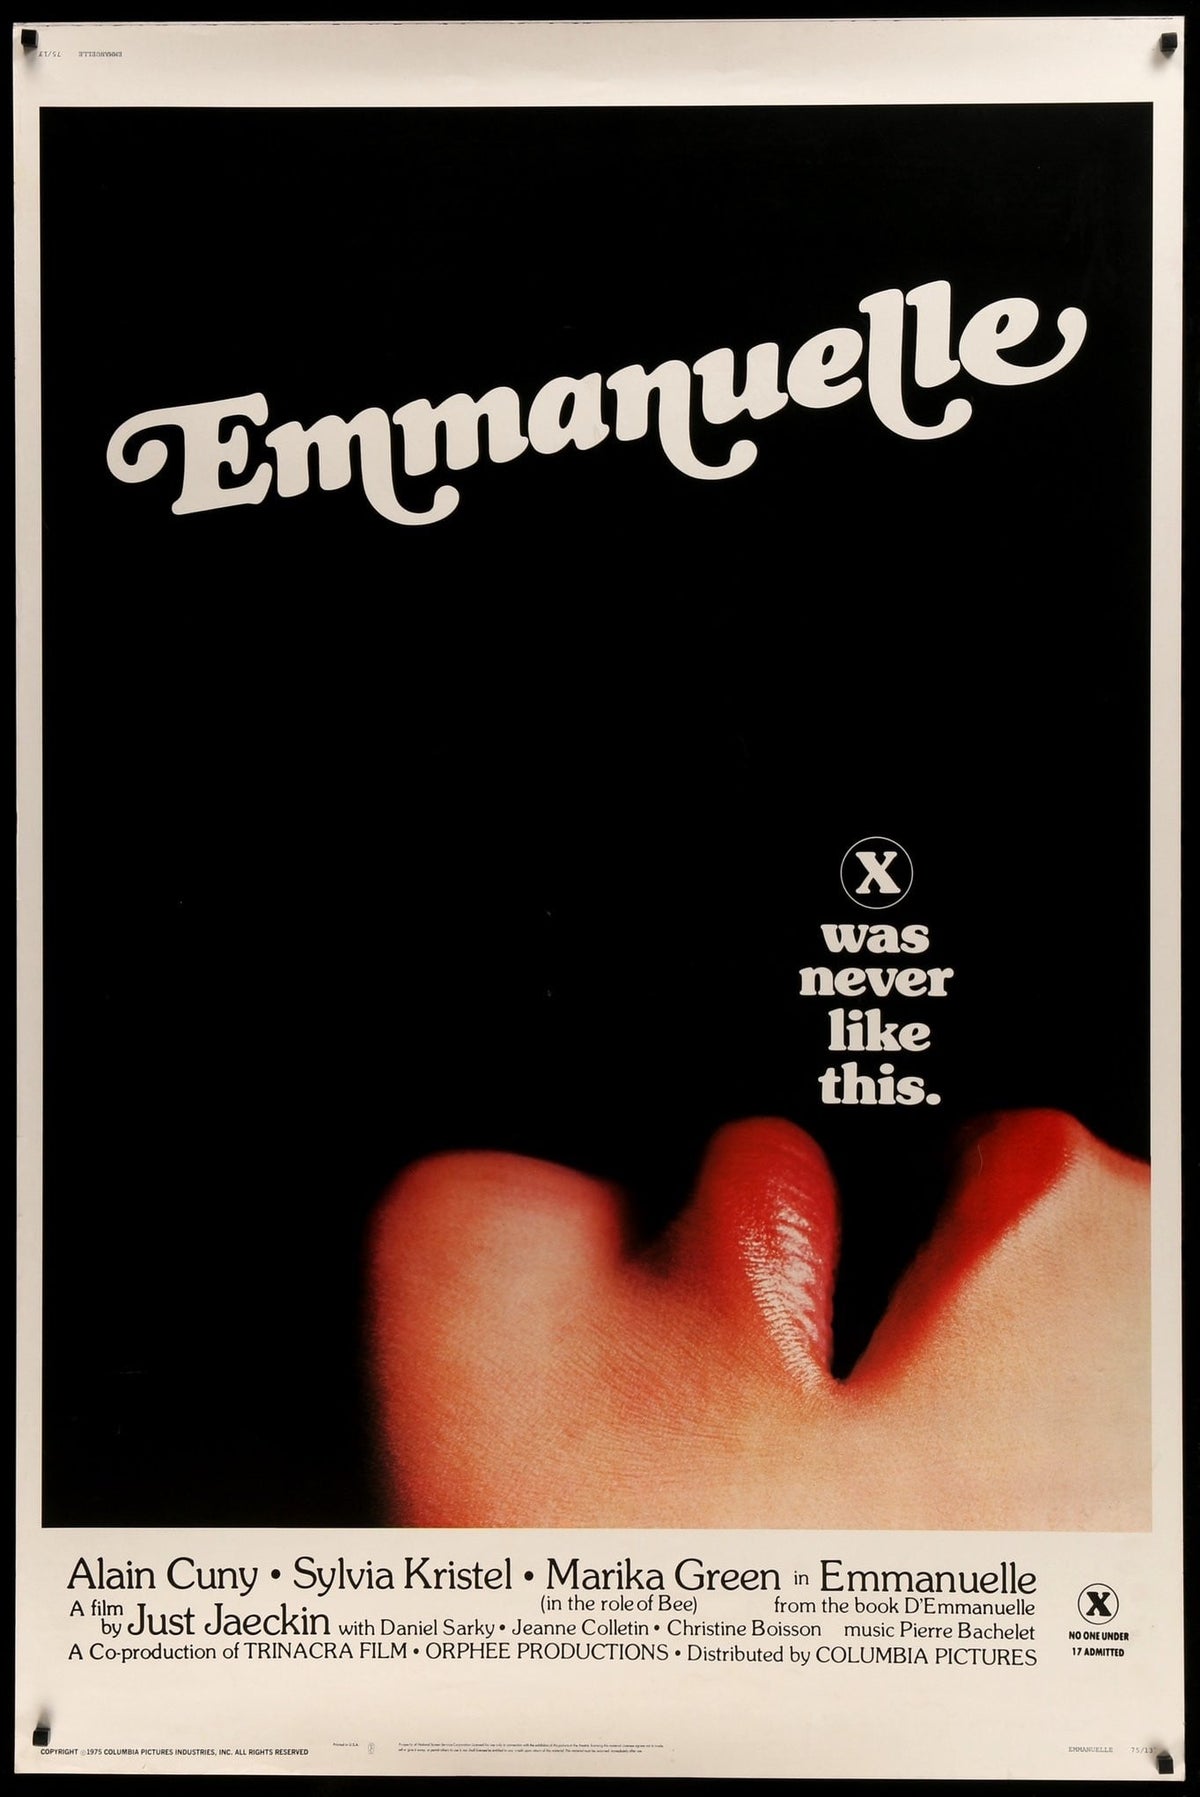 Emmanuelle (1974) original movie poster for sale at Original Film Art